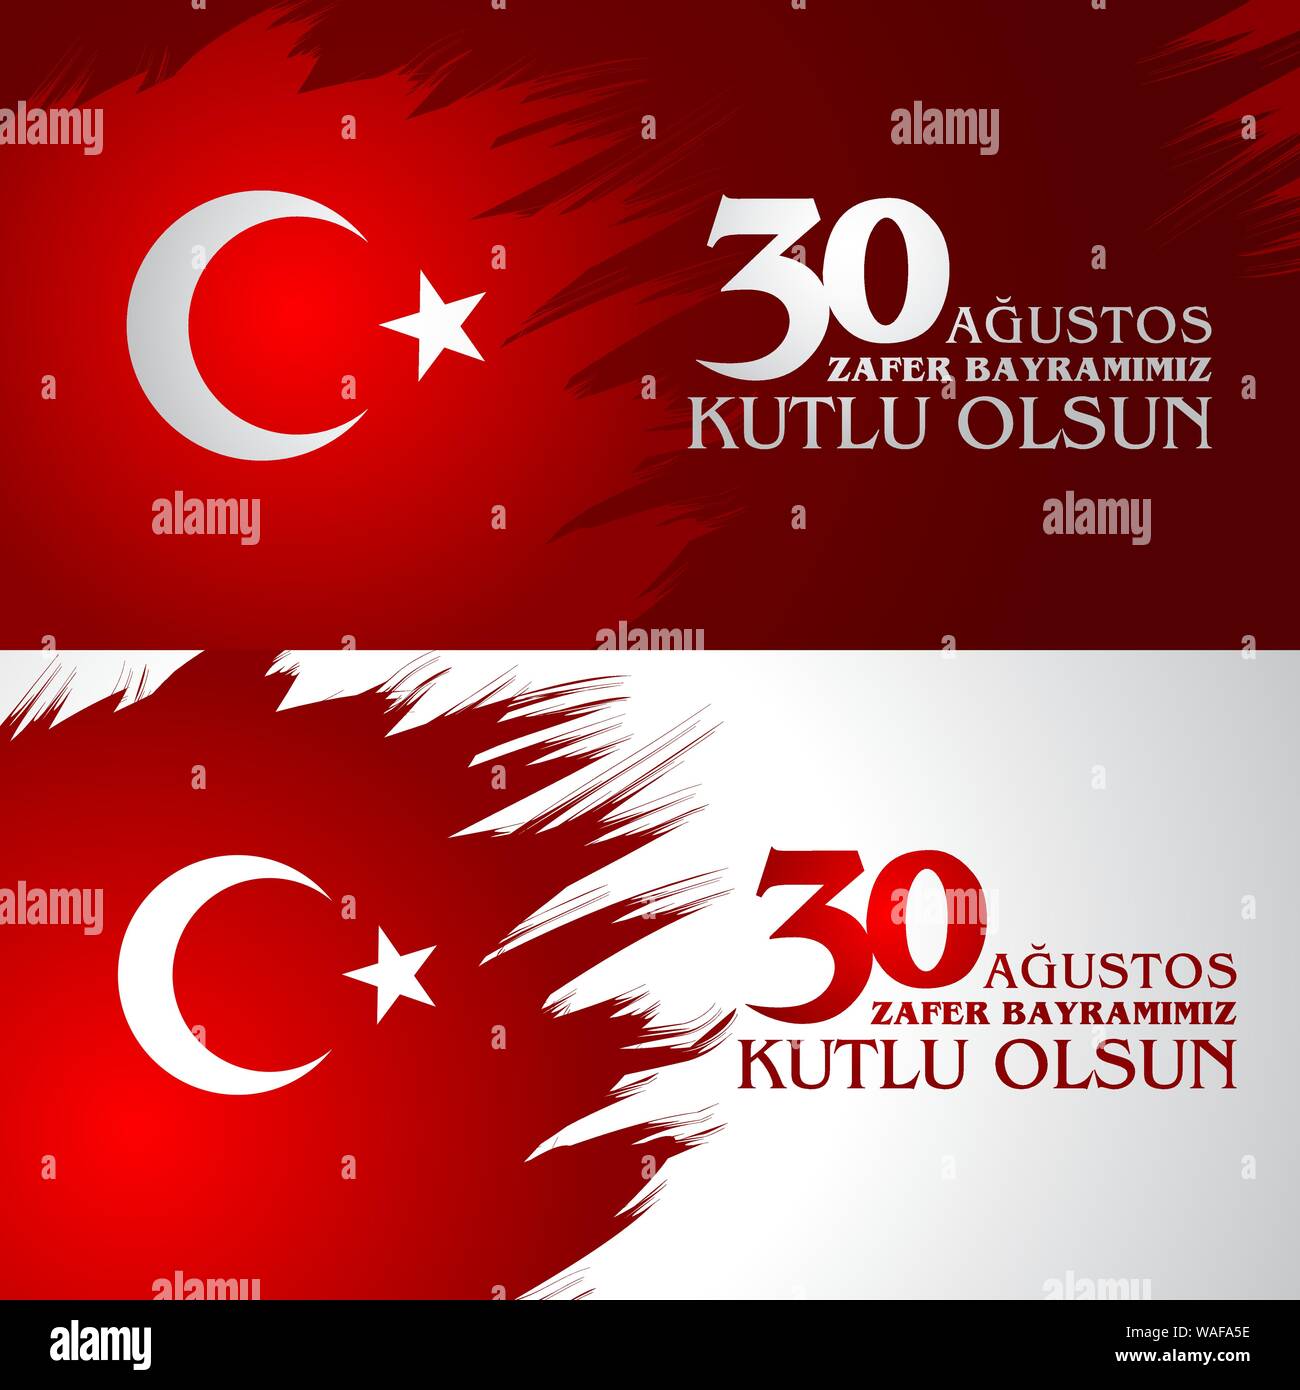 Zafer Bayrami Agustos 30. Traduction : 30 Août fête de la victoire et de la fête nationale turque. Illustration de Vecteur